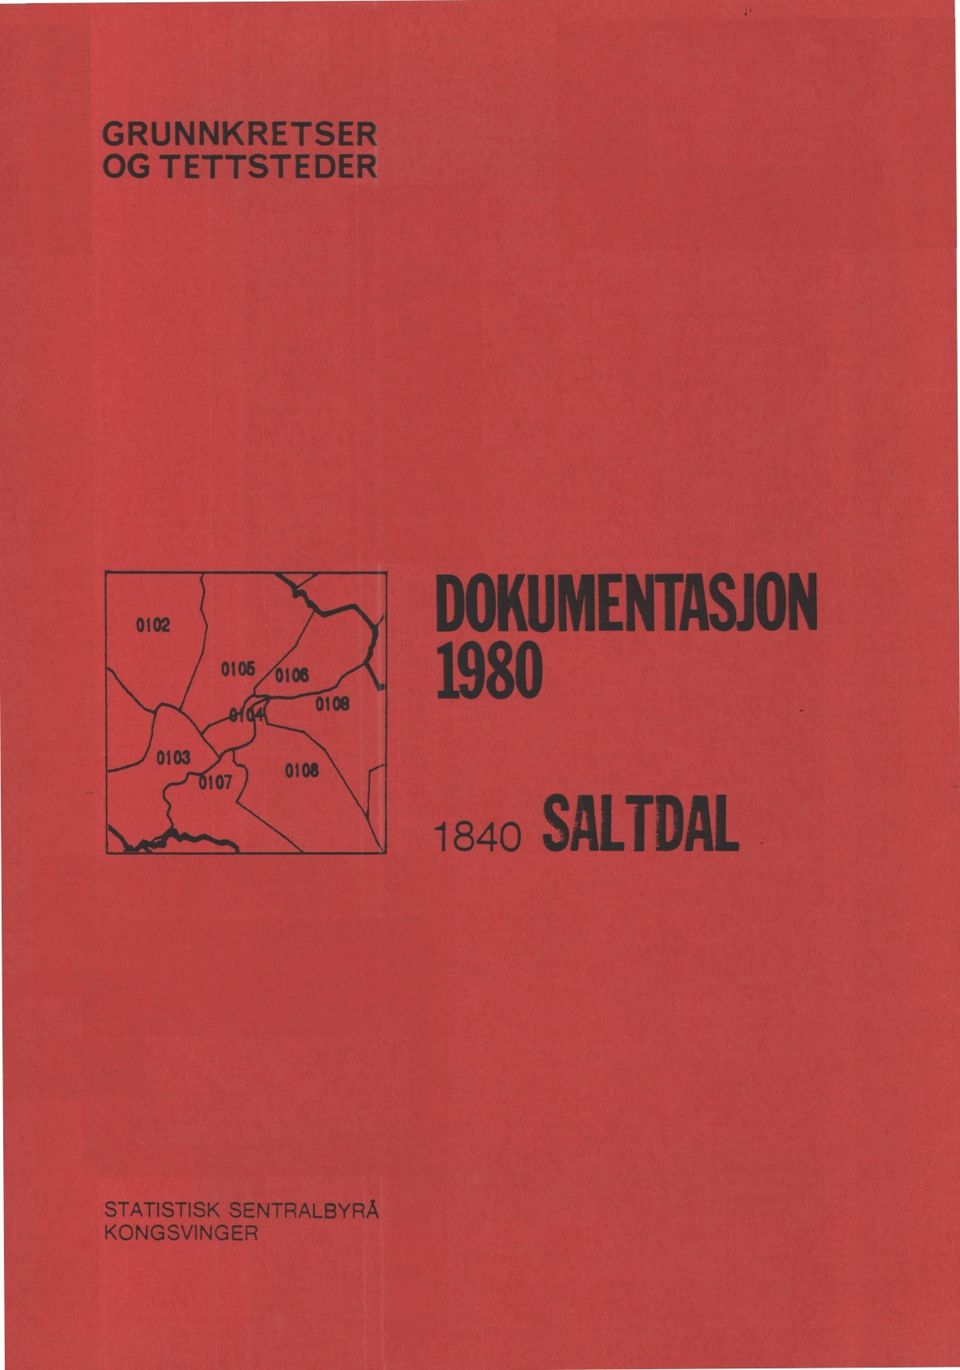 DOKUMENTASJON 1980 1840